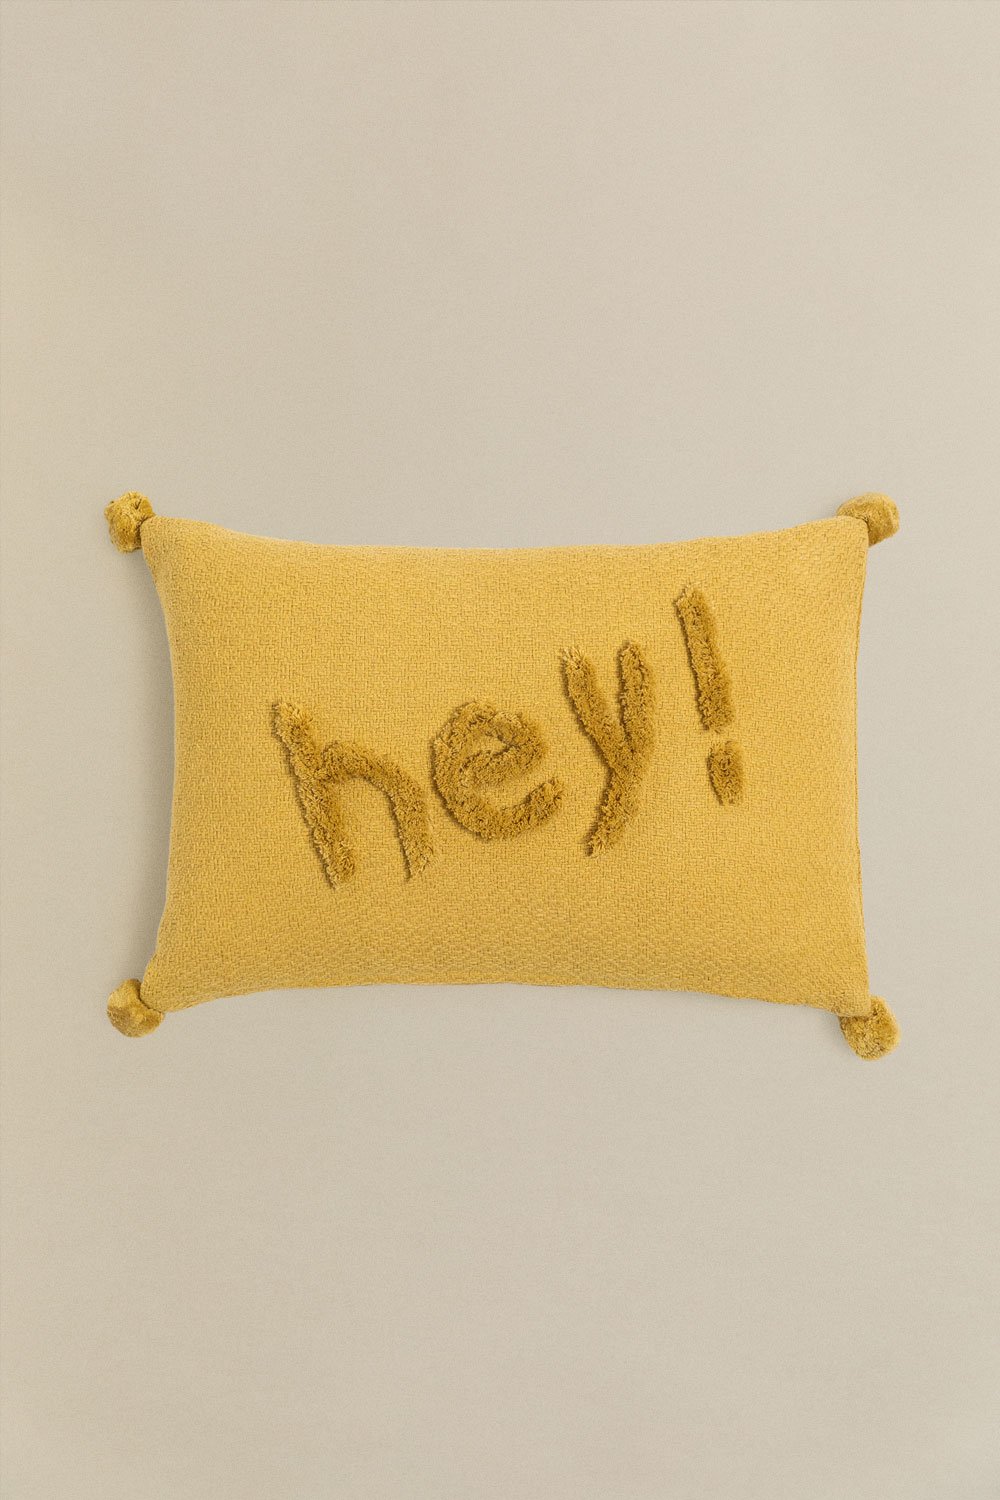 Cuscino con ricamo in cotone (34x48 cm) Jei , immagine della galleria 1